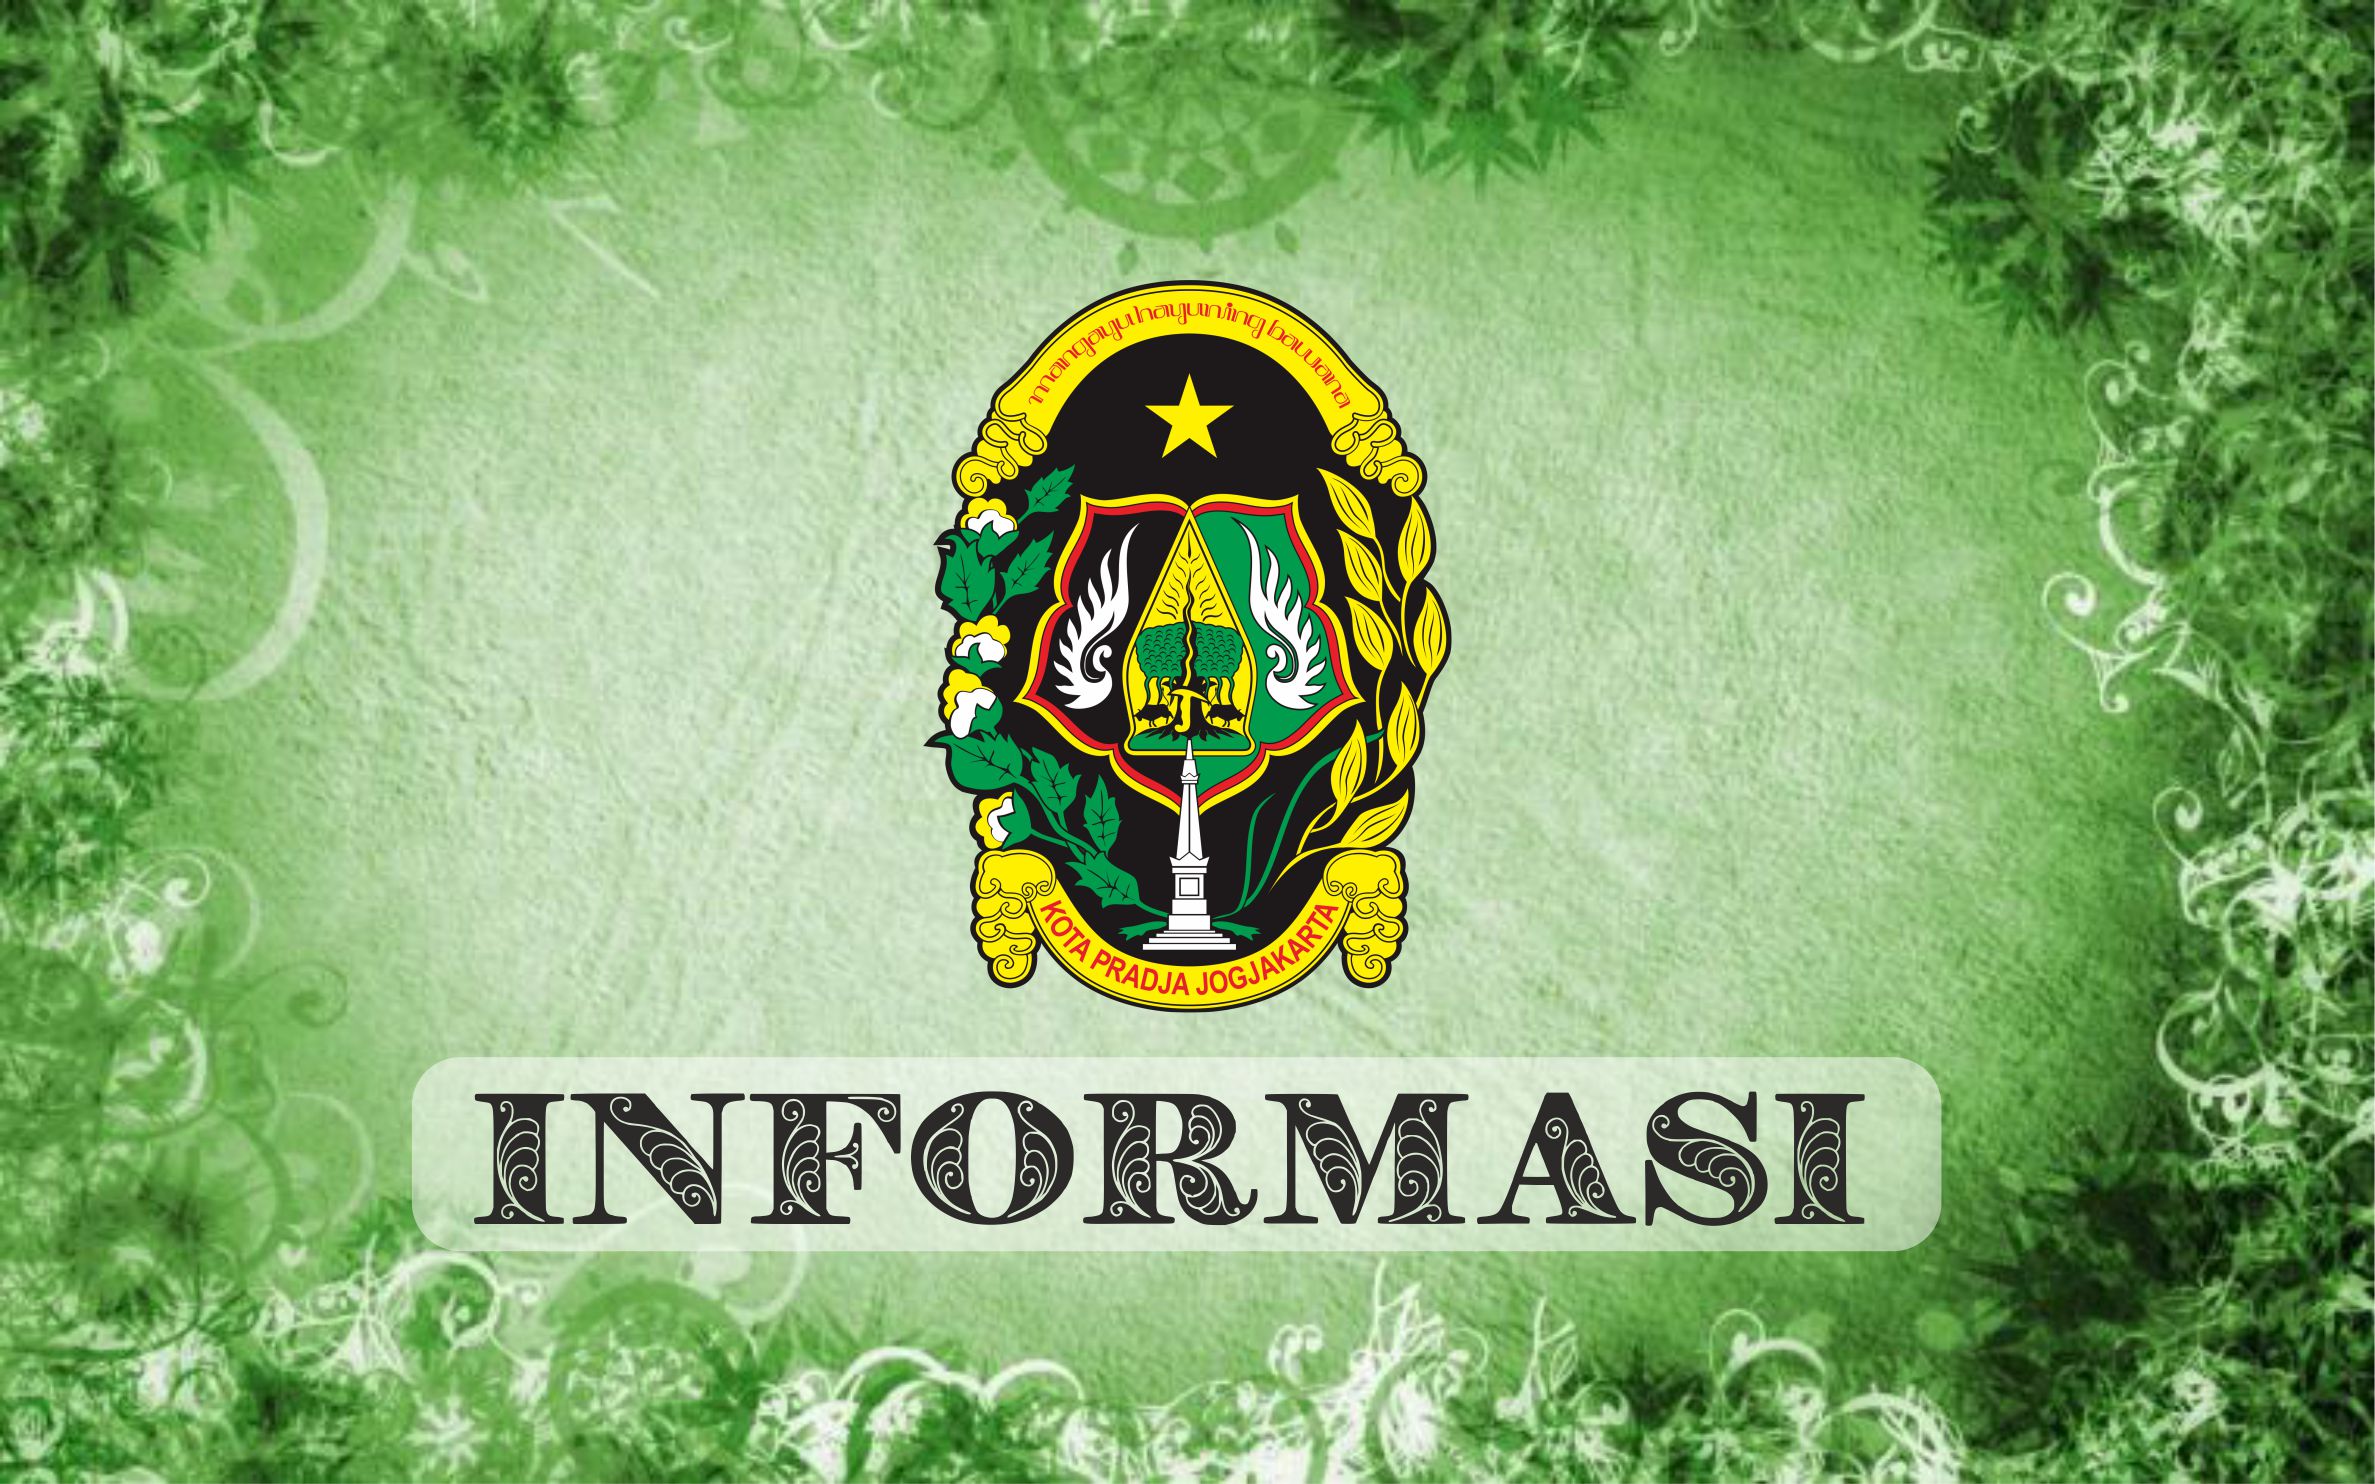 Surat Edaran Walikota Yogyakarta tentang Pencegahan COVID-19